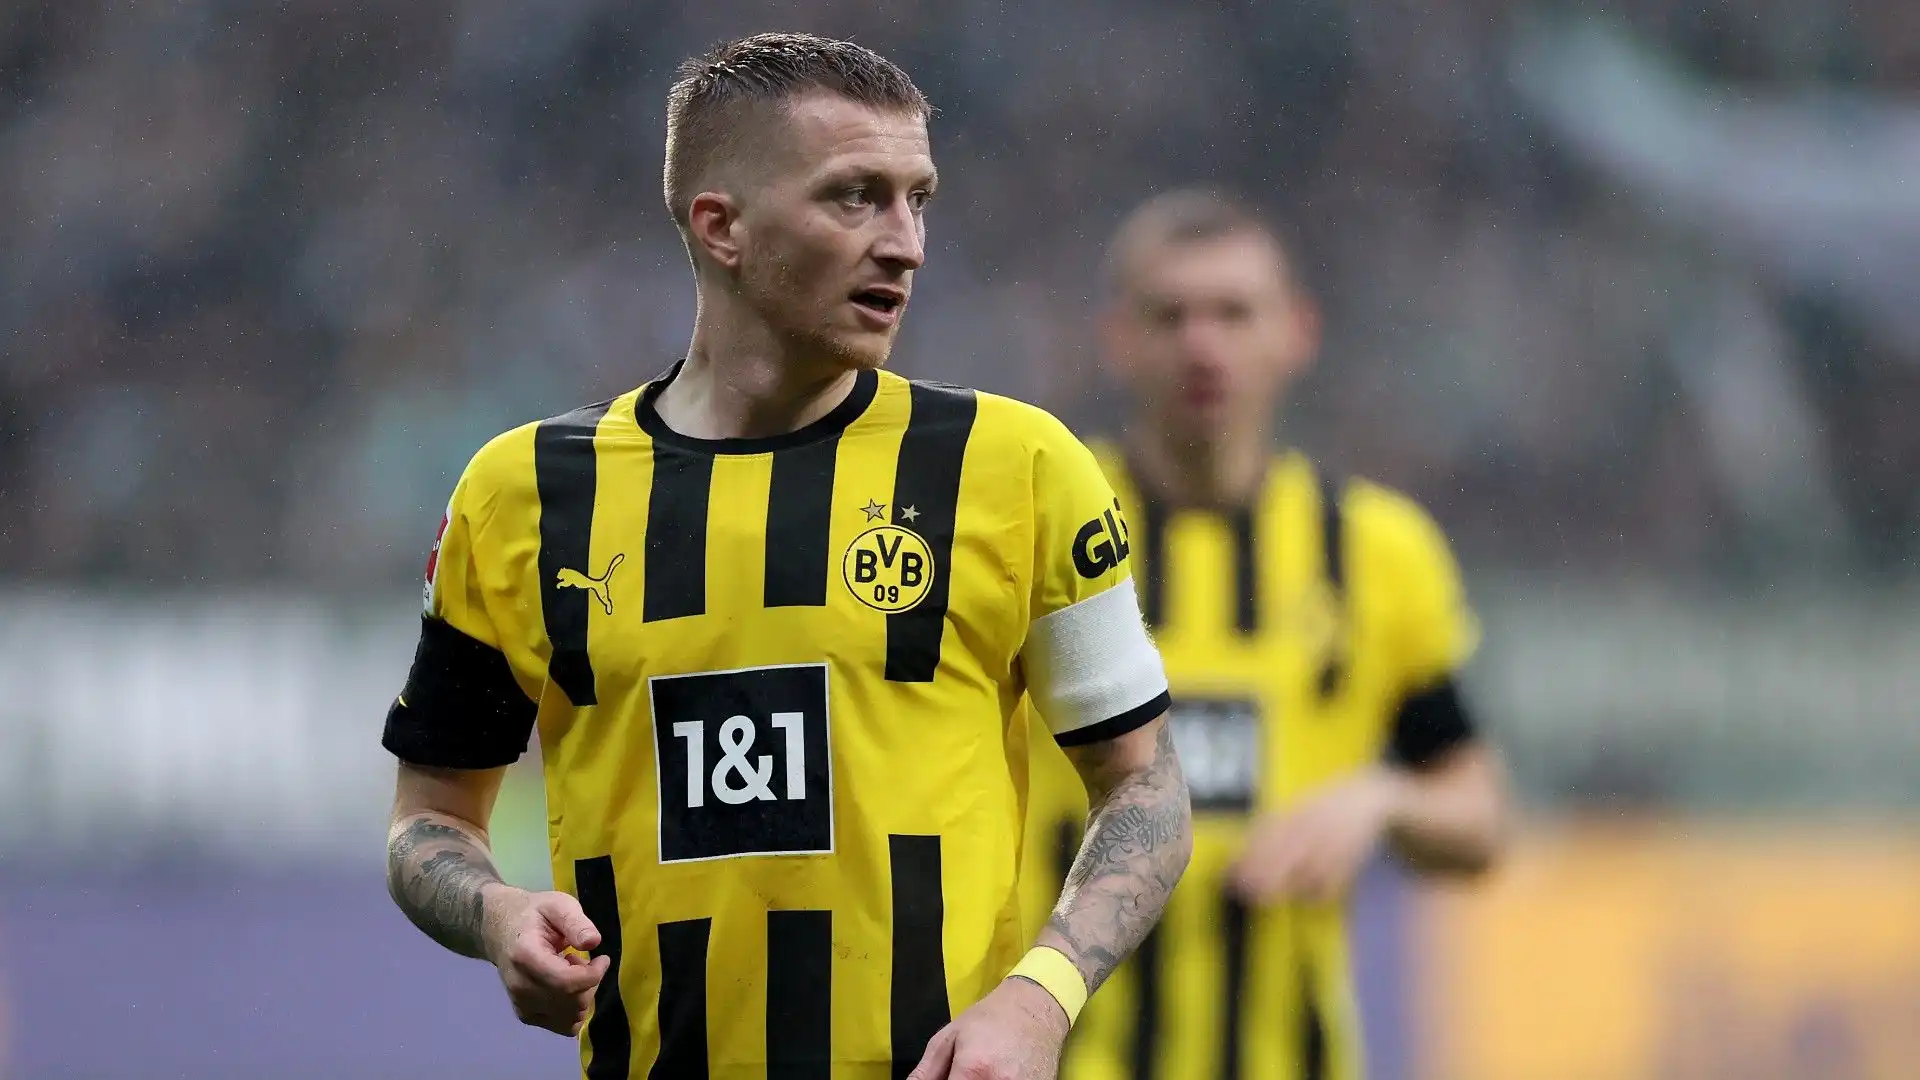 L'attaccante tedesco vestirà la maglia del Borussia Dortmund anche nella prossima stagione